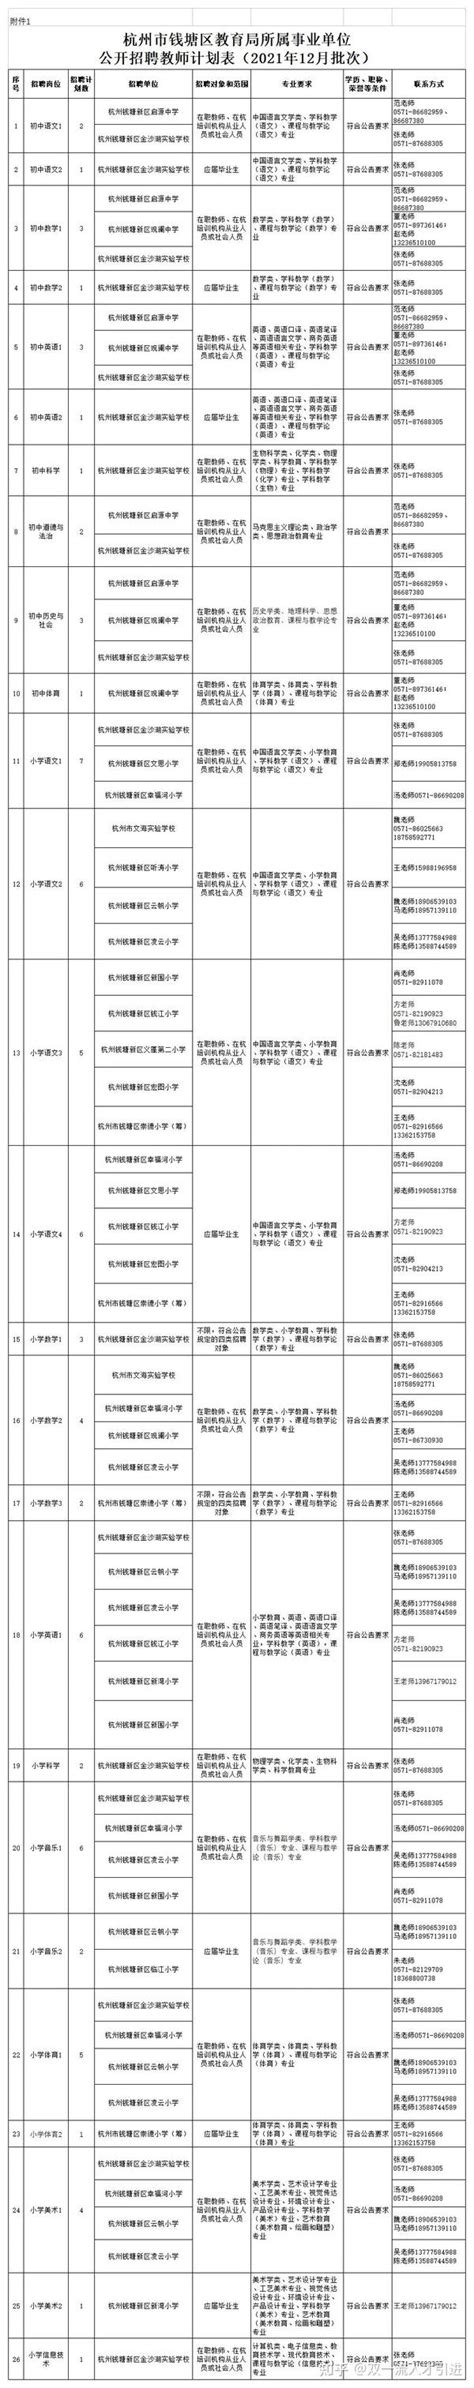 【浙江|杭州】杭州市钱塘区教育局所属事业单位公开招聘教师79名公告 - 知乎